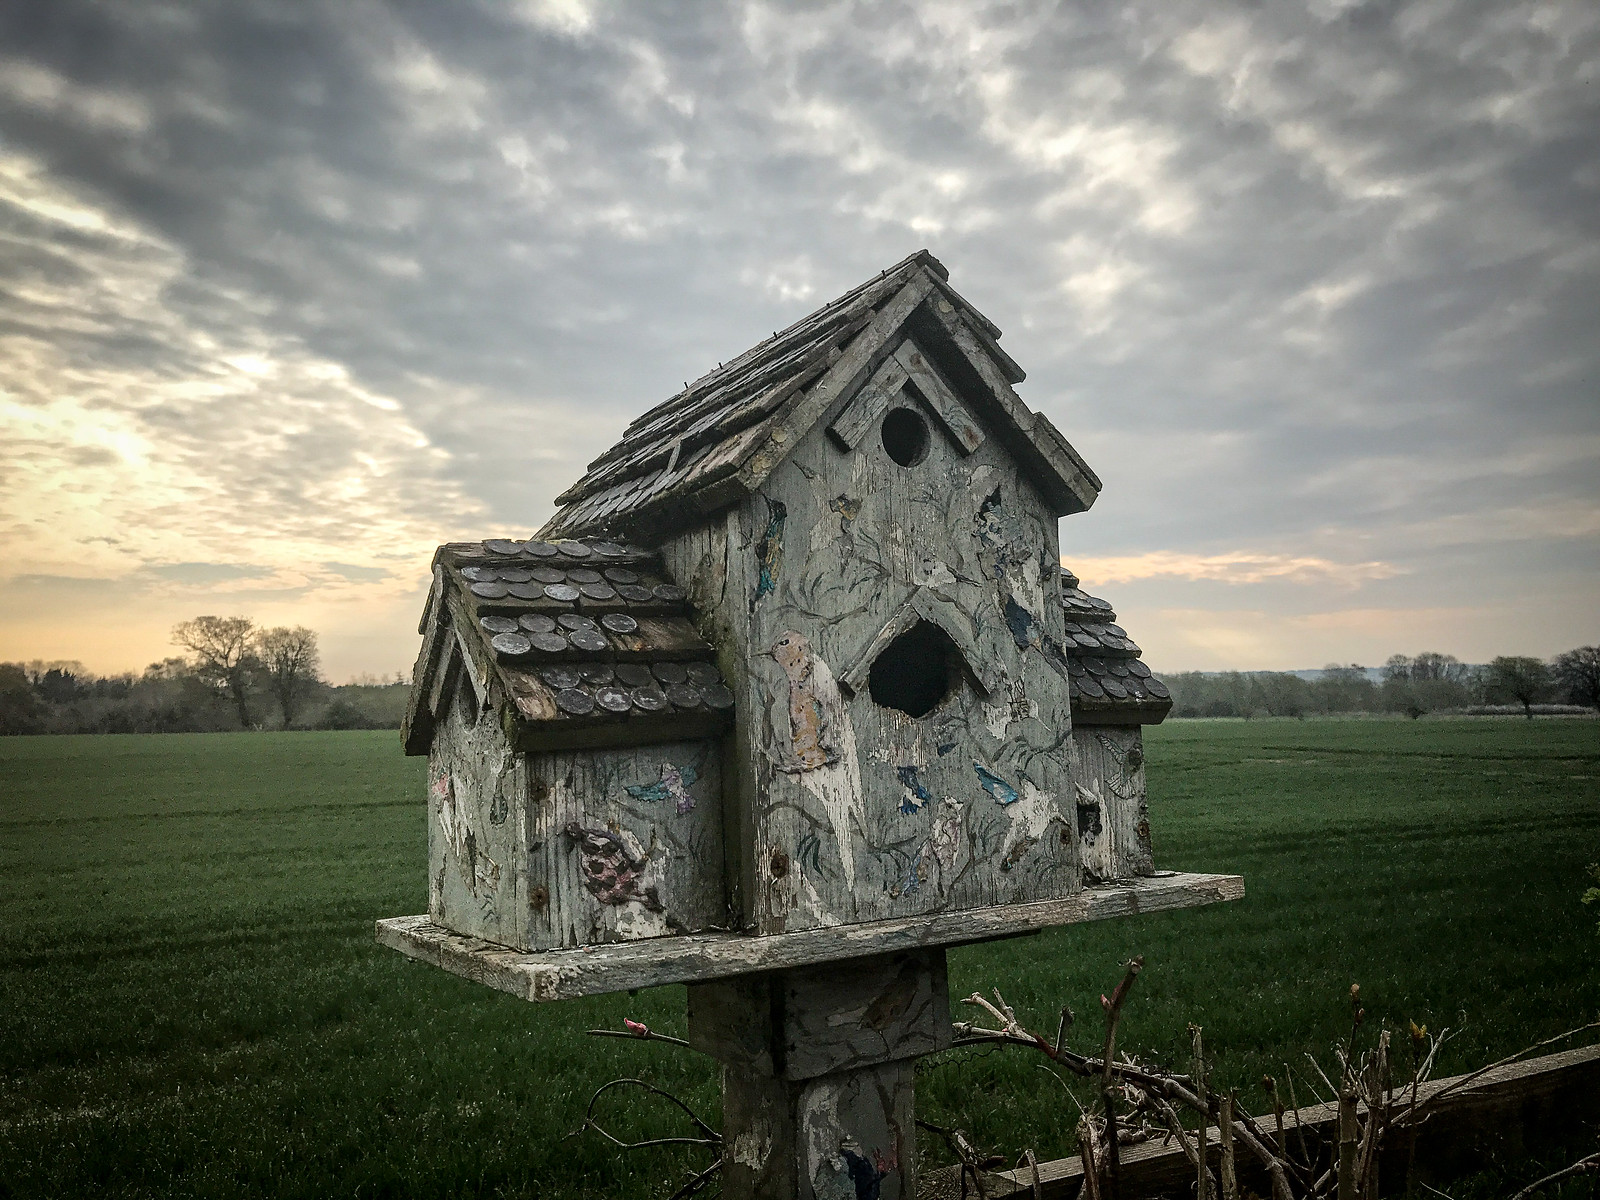 The bird house